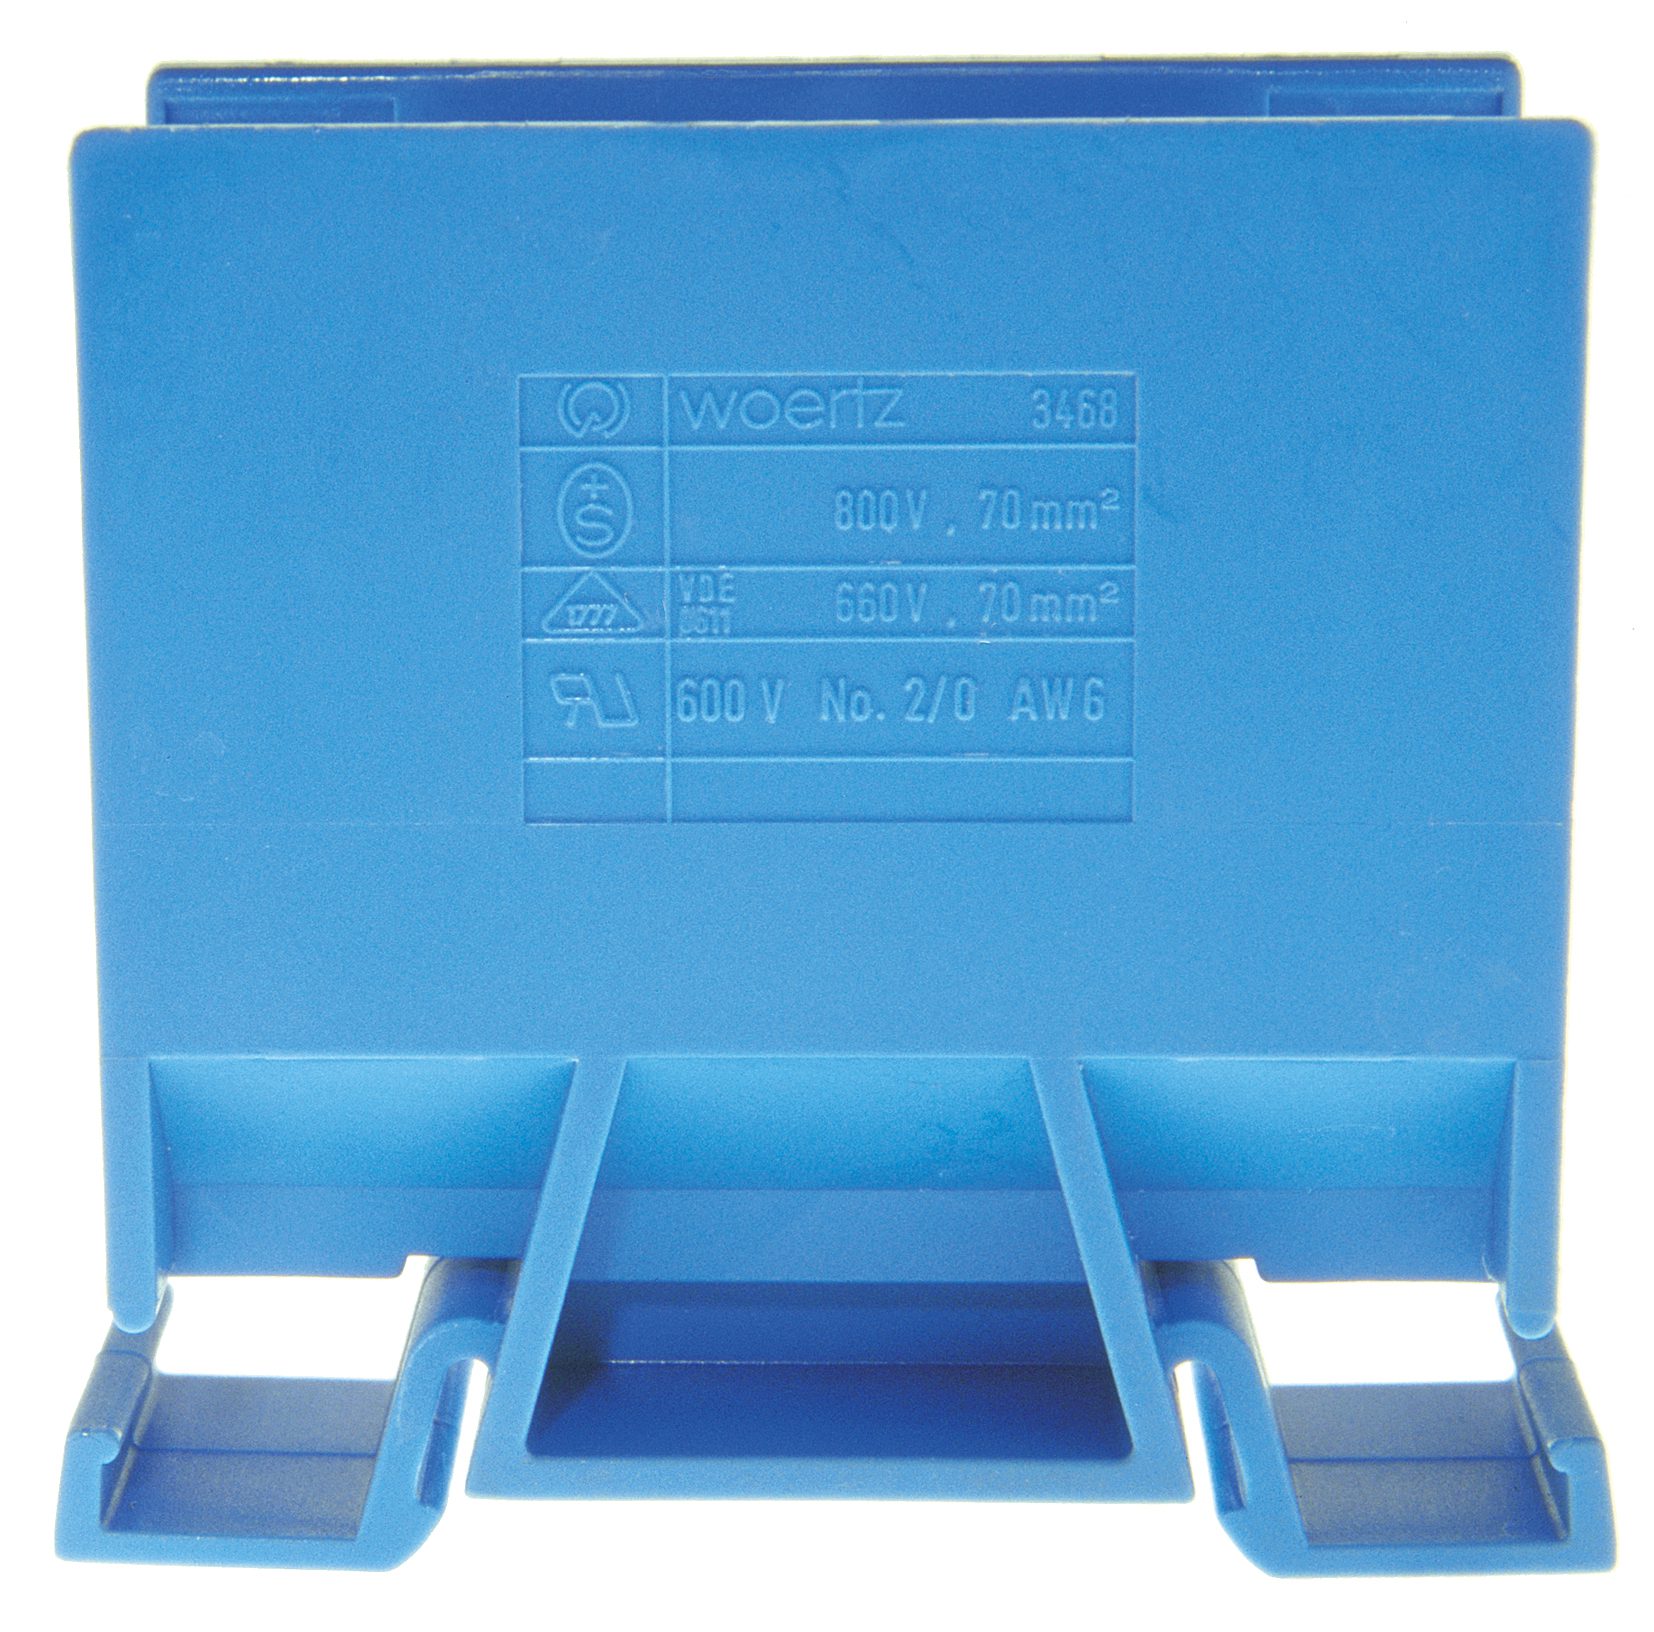 35mm² DC Hochstrom Klemmenblock für 35mm DIN-Hutschiene, 125A/800V,  rot/blau